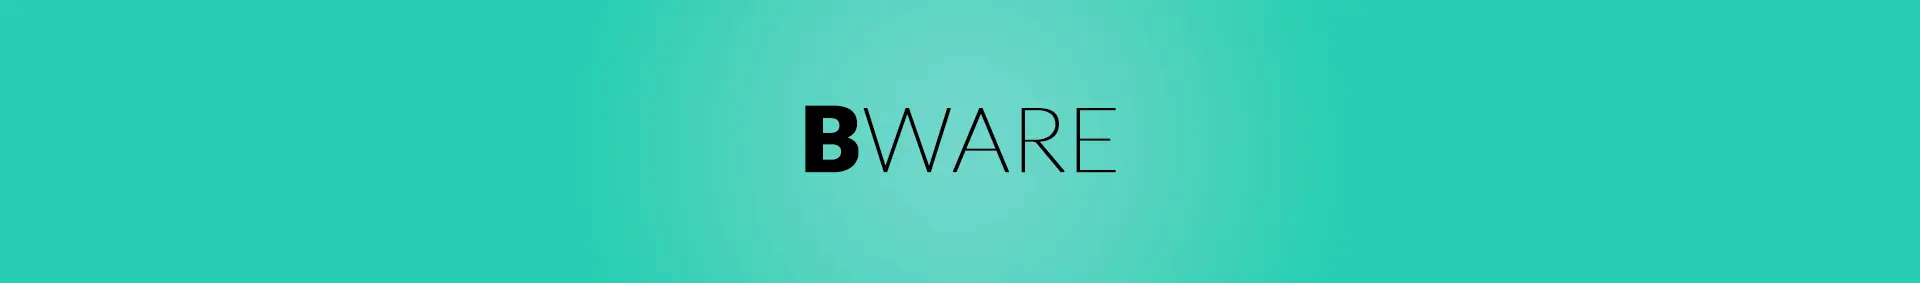 banner_bware.webp